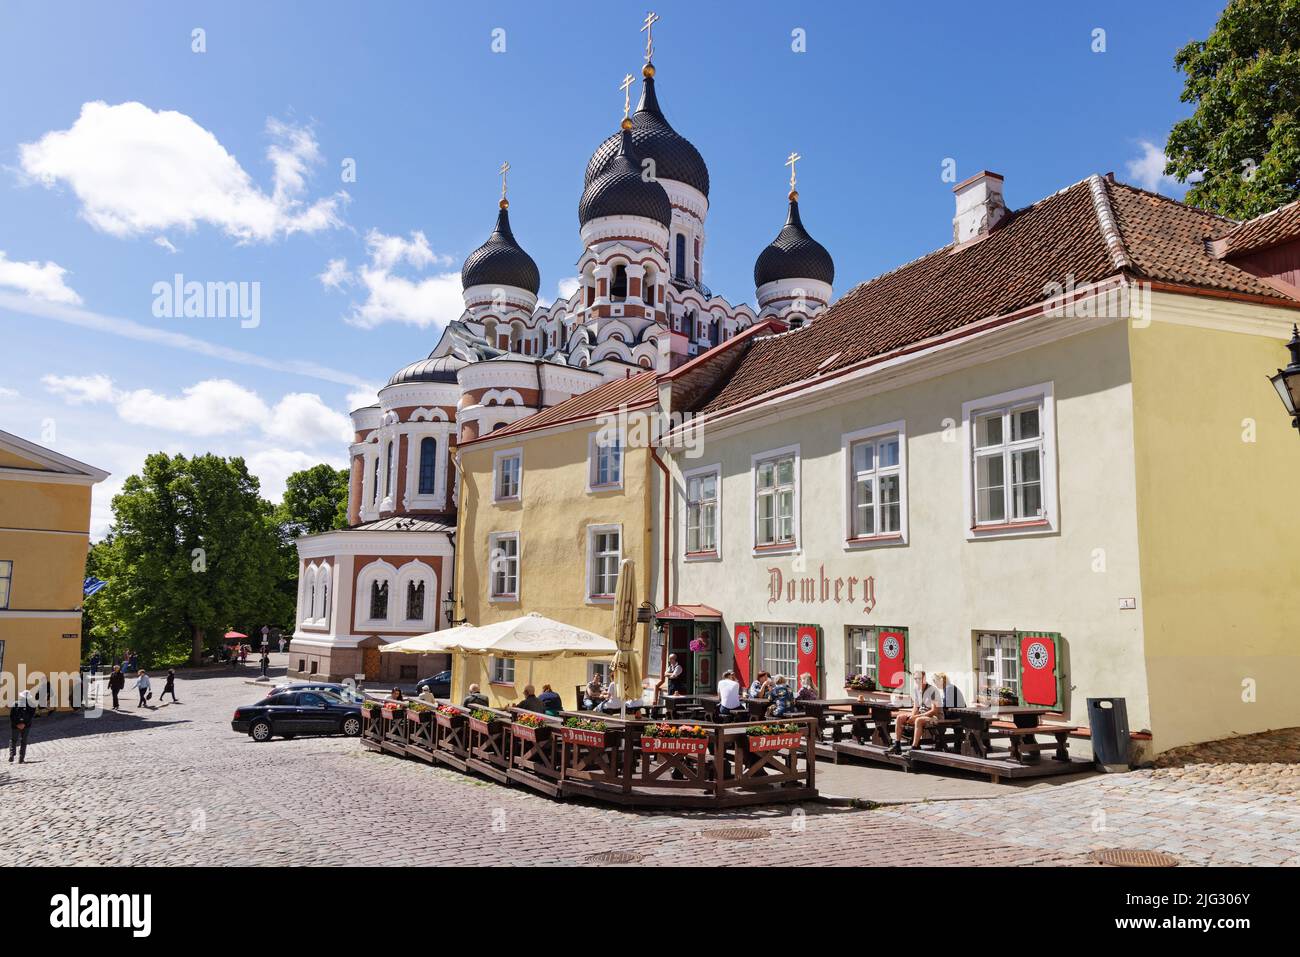 Viaggio a Tallinn; la cattedrale Alexander Nevsky, una chiesa ortodossa, e il ristorante DOMBERG, la città vecchia di Tallinn, Tallinn Estonia Europe Foto Stock